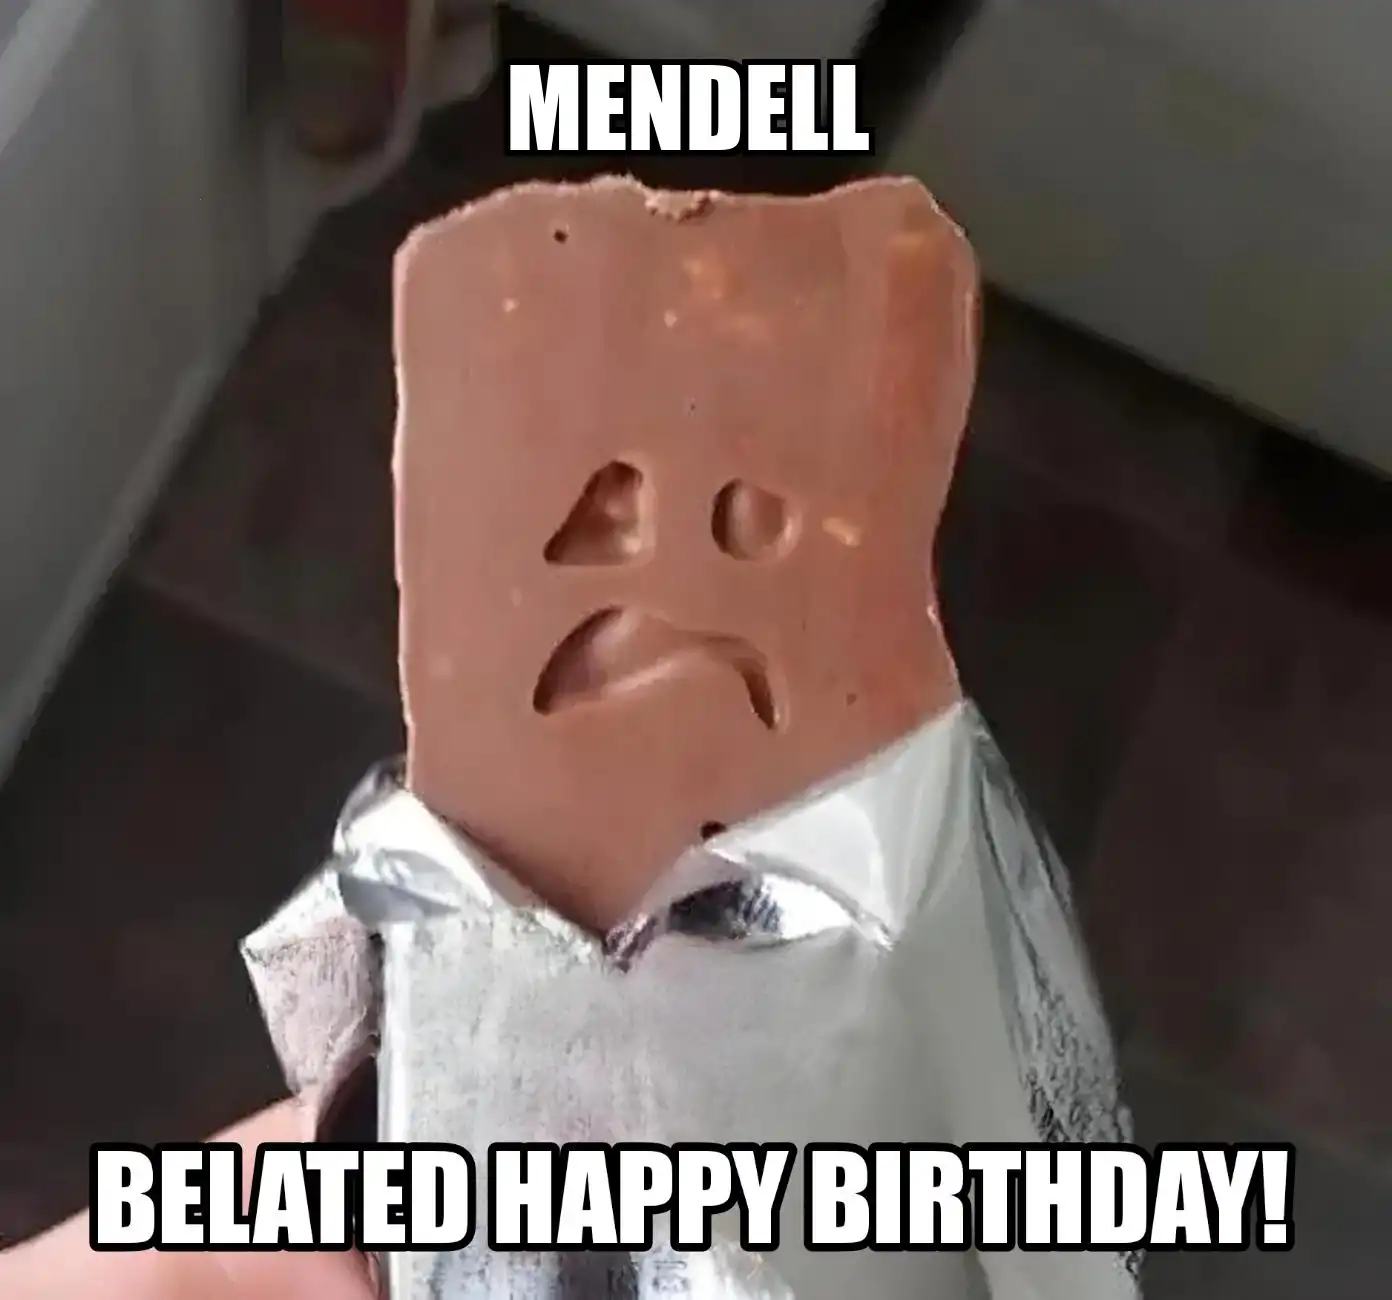 Happy Birthday Mendell Belated Happy Birthday Meme